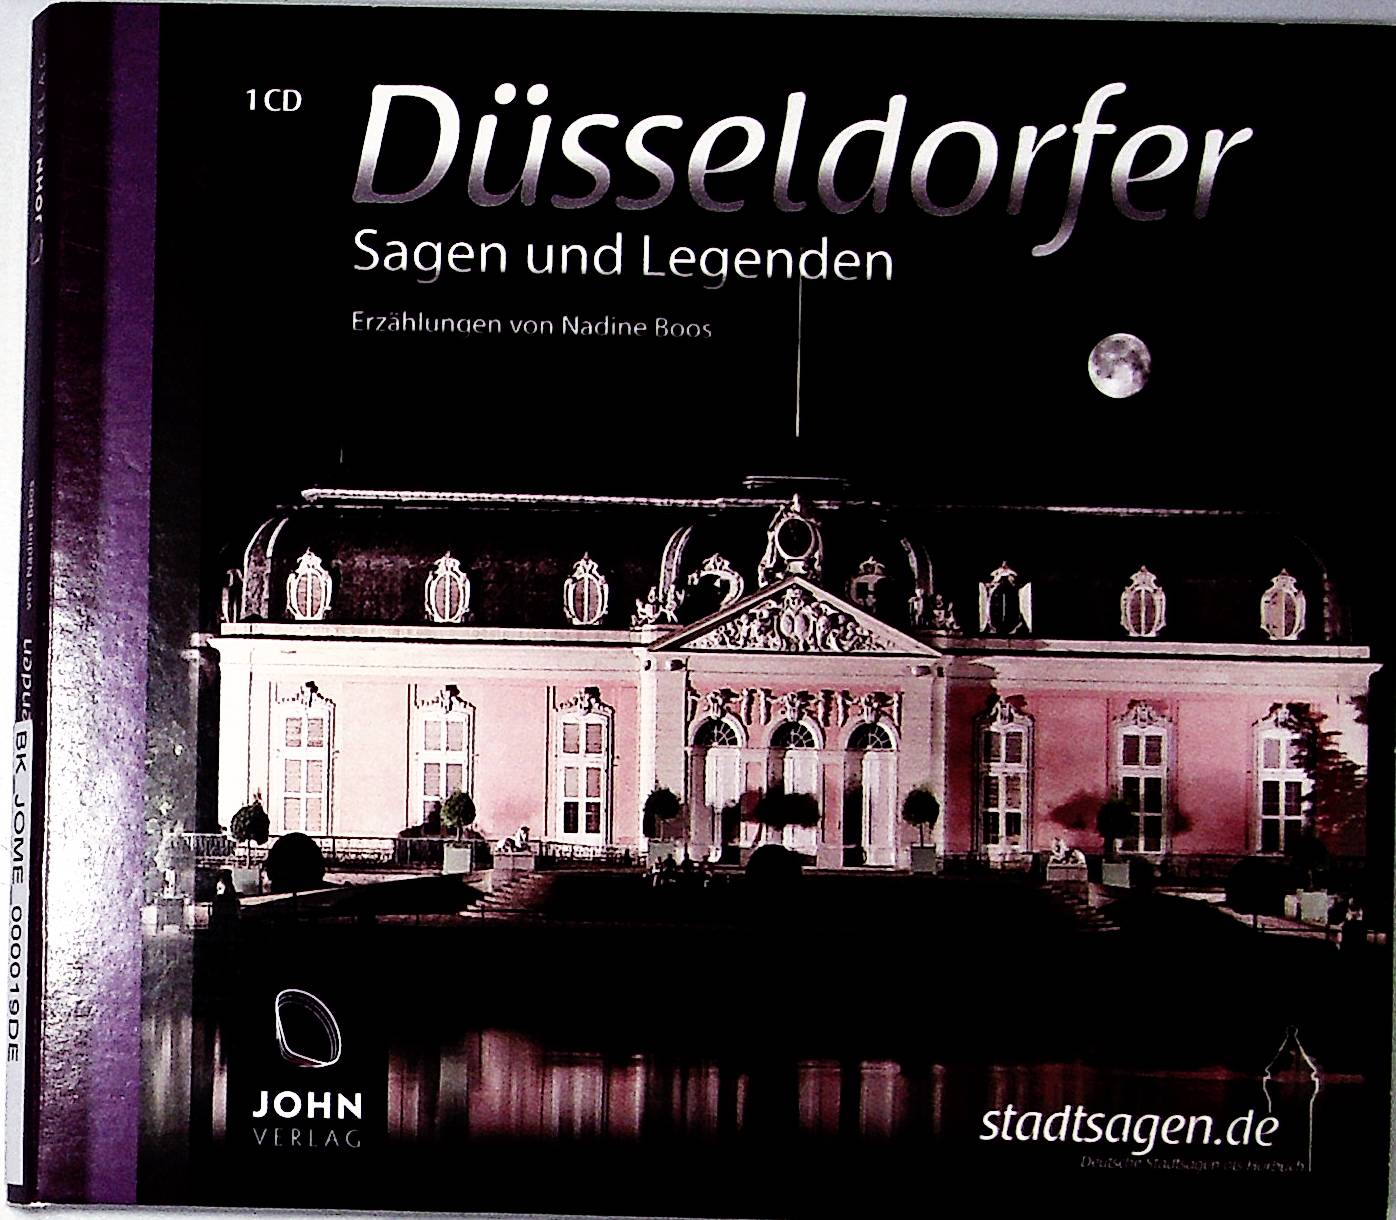 Düsseldorfer Sagen und Legenden: Stadtsagen und Geschichte Düsseldorf (Stadtsagen: Die schönsten deutschen Sagen als Hörbuch) - John, Verlag und Nadine Boos